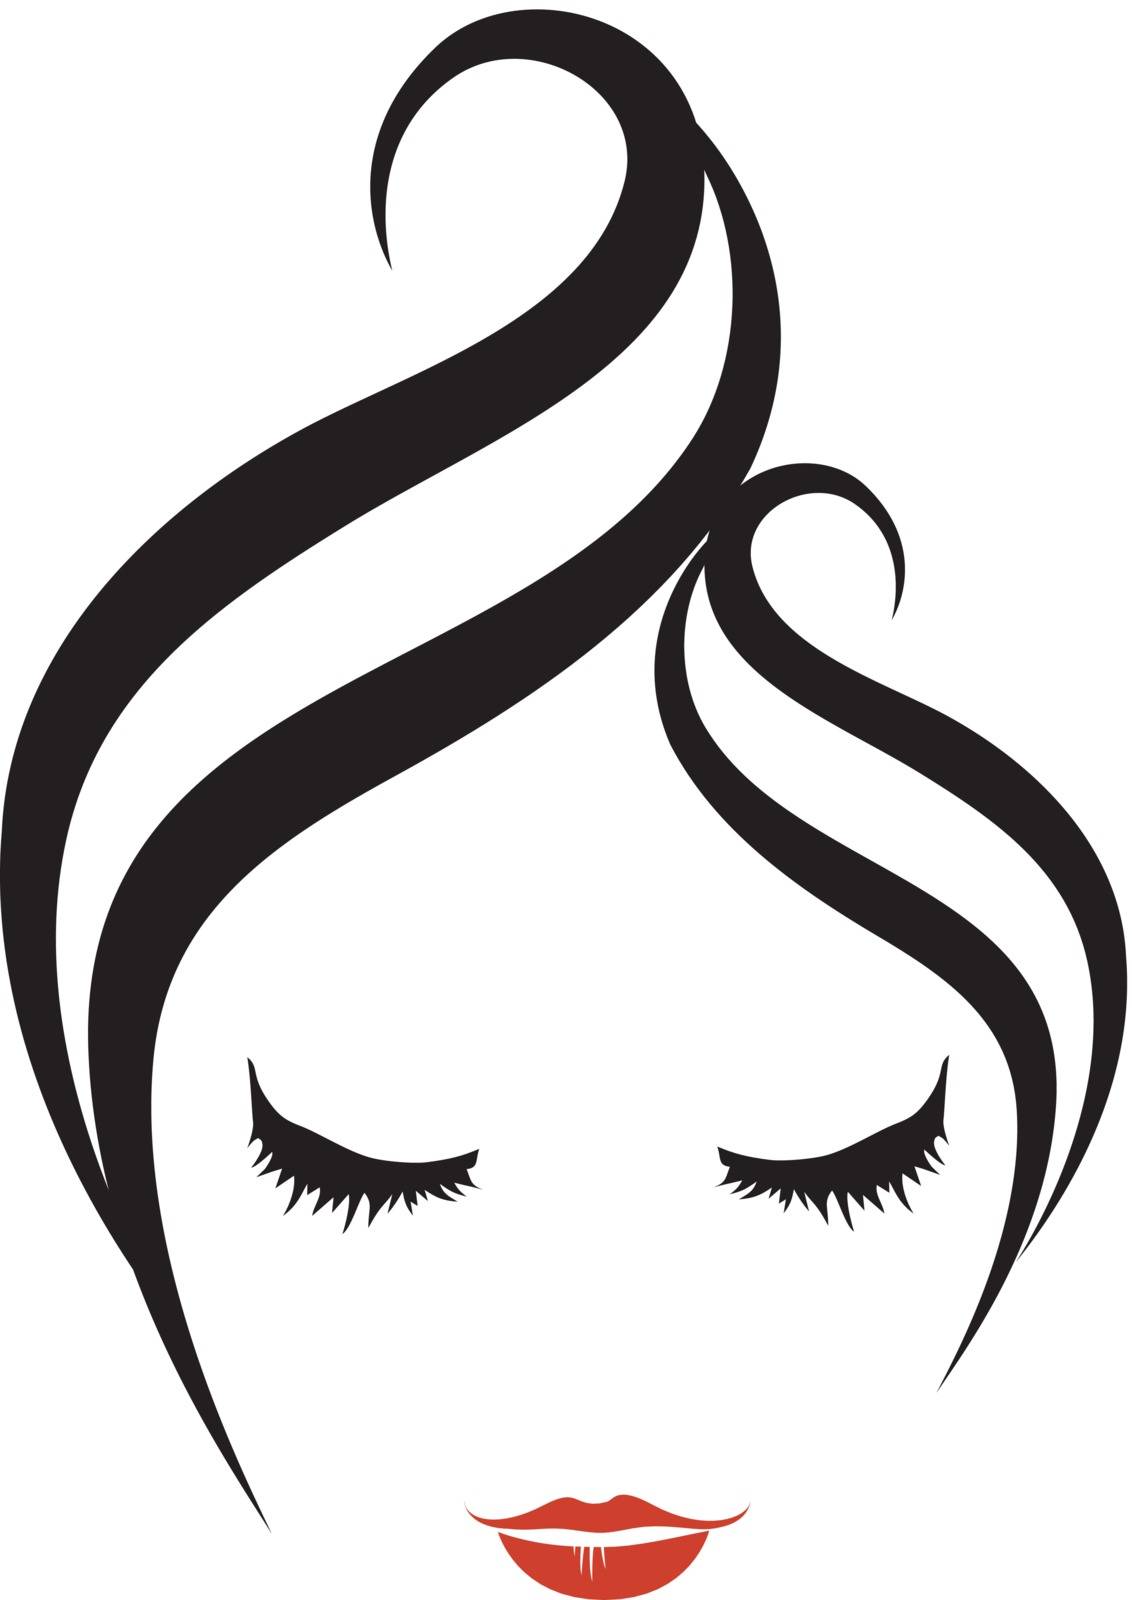 Hairstyle logo by shawlinmohd